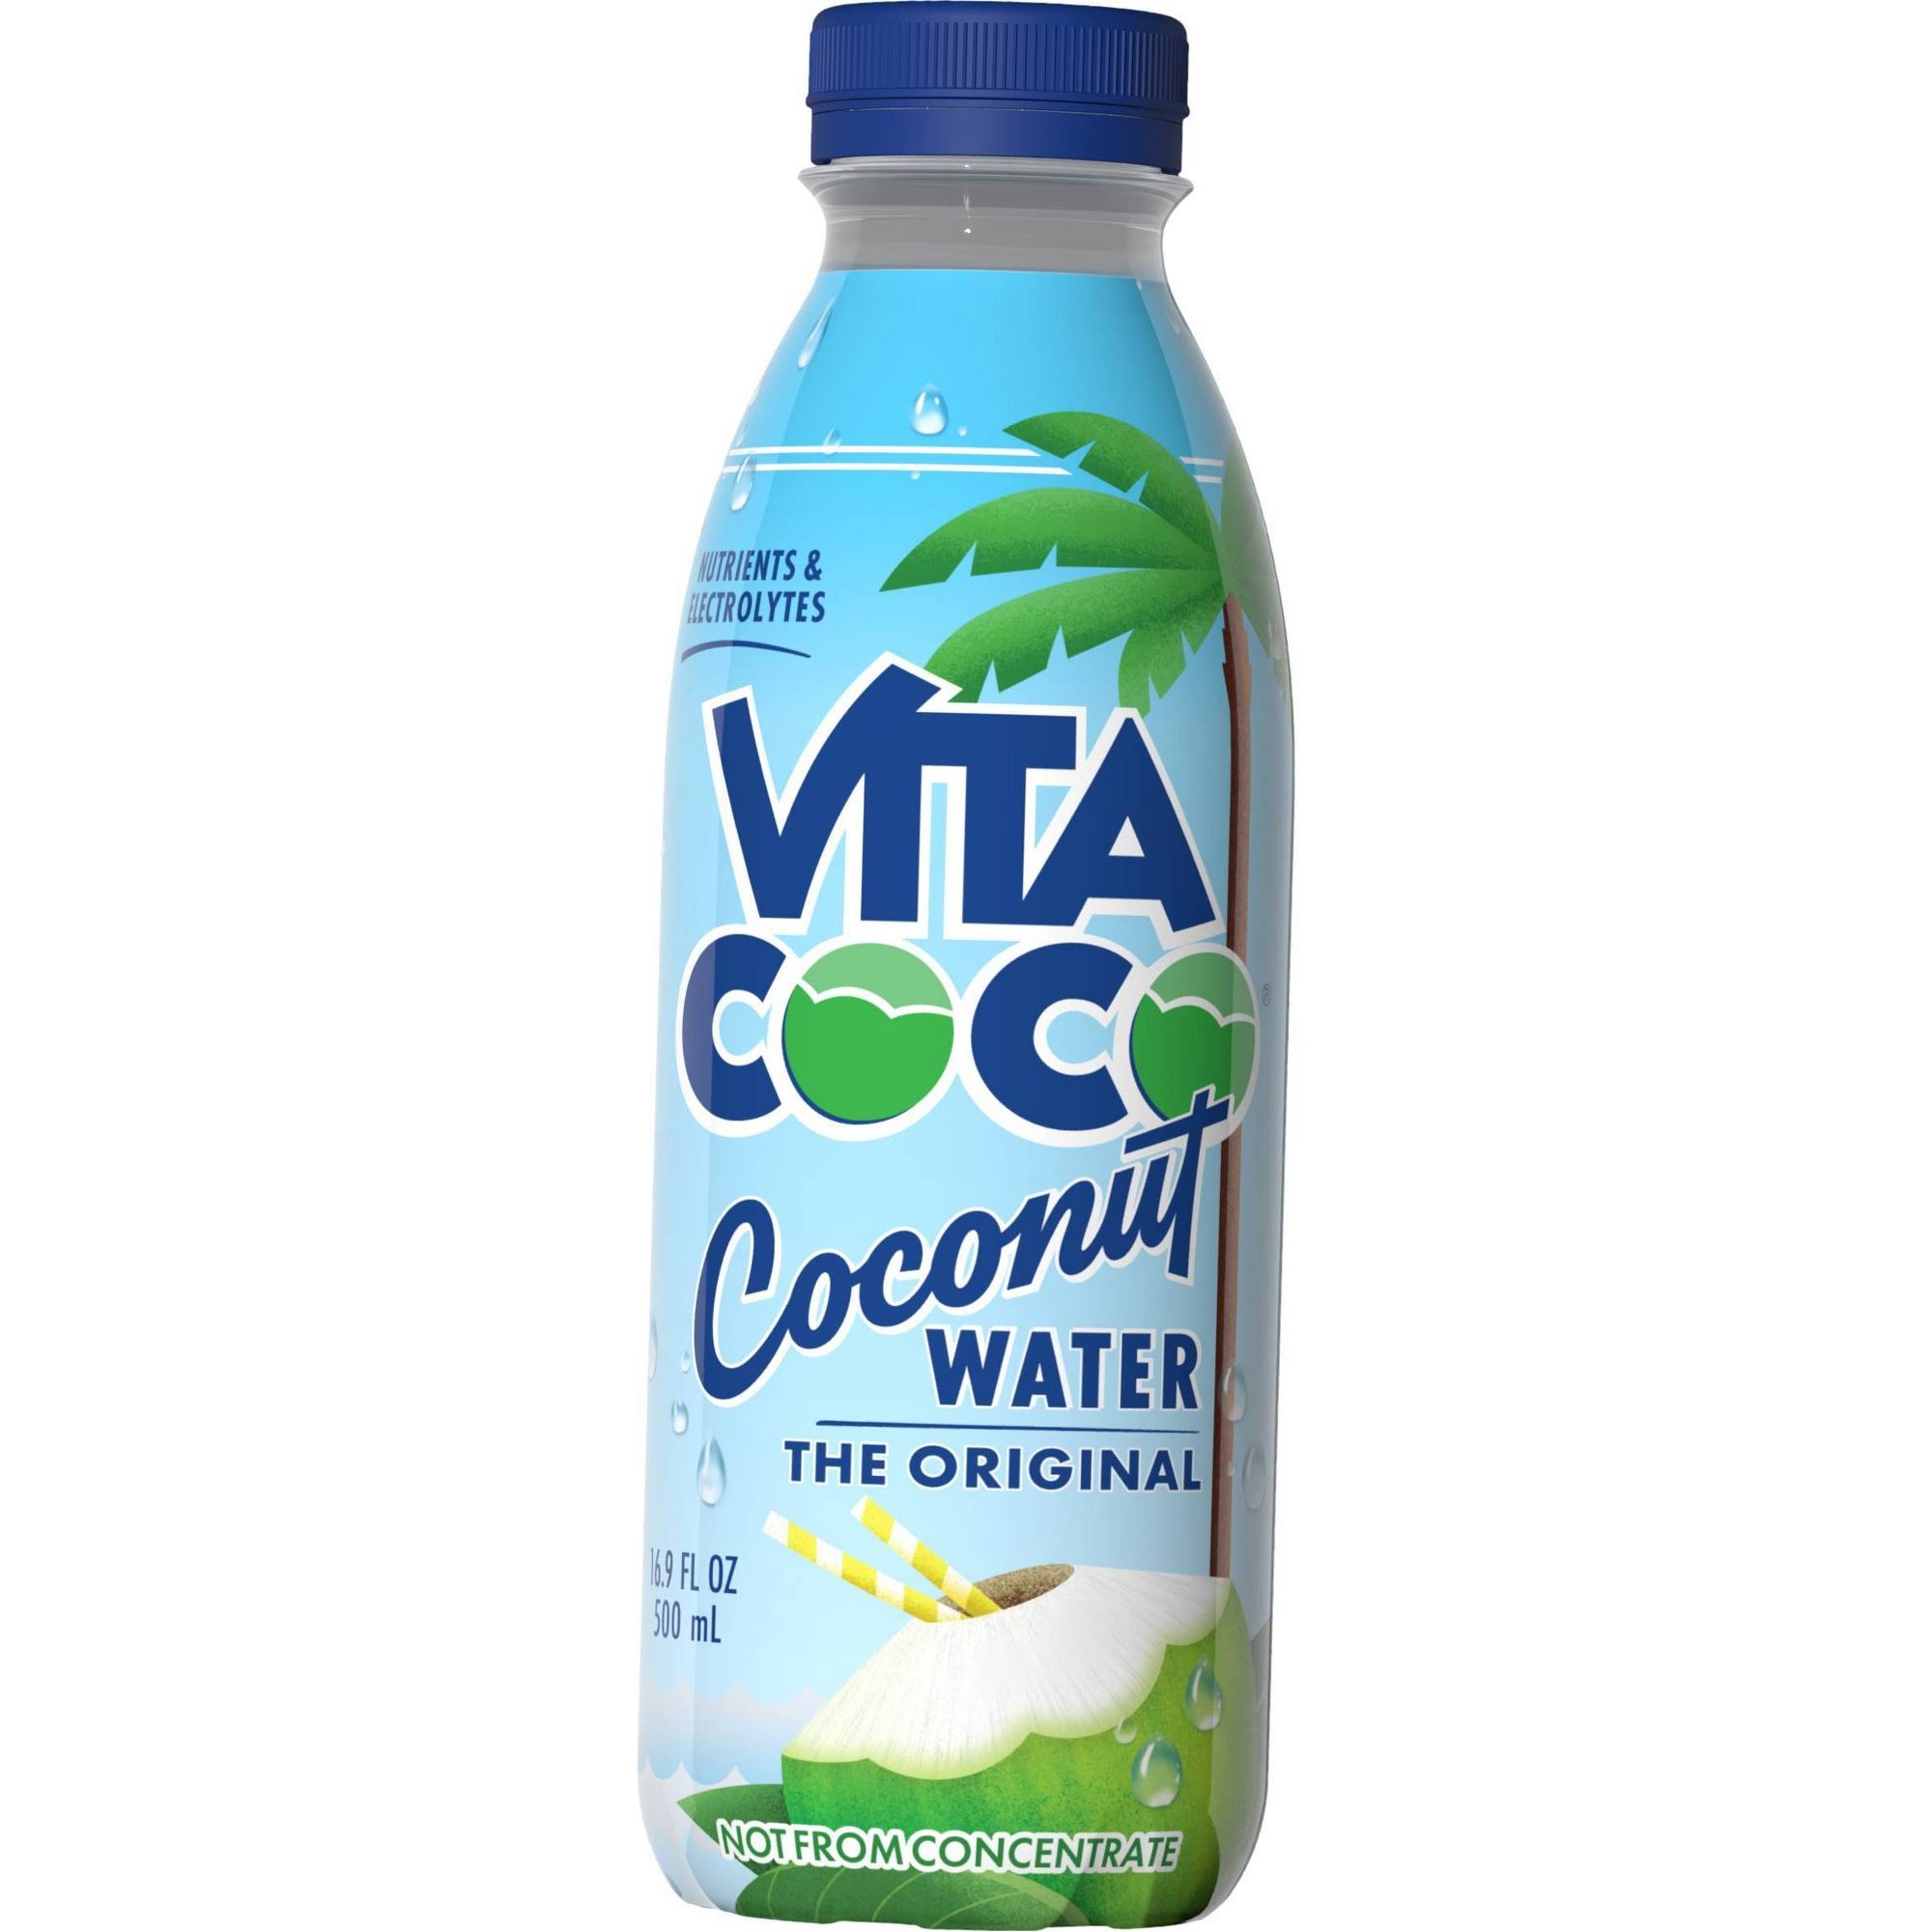 Vita Coco Coconut Water, The Original - 16.9 fl oz 500 ml